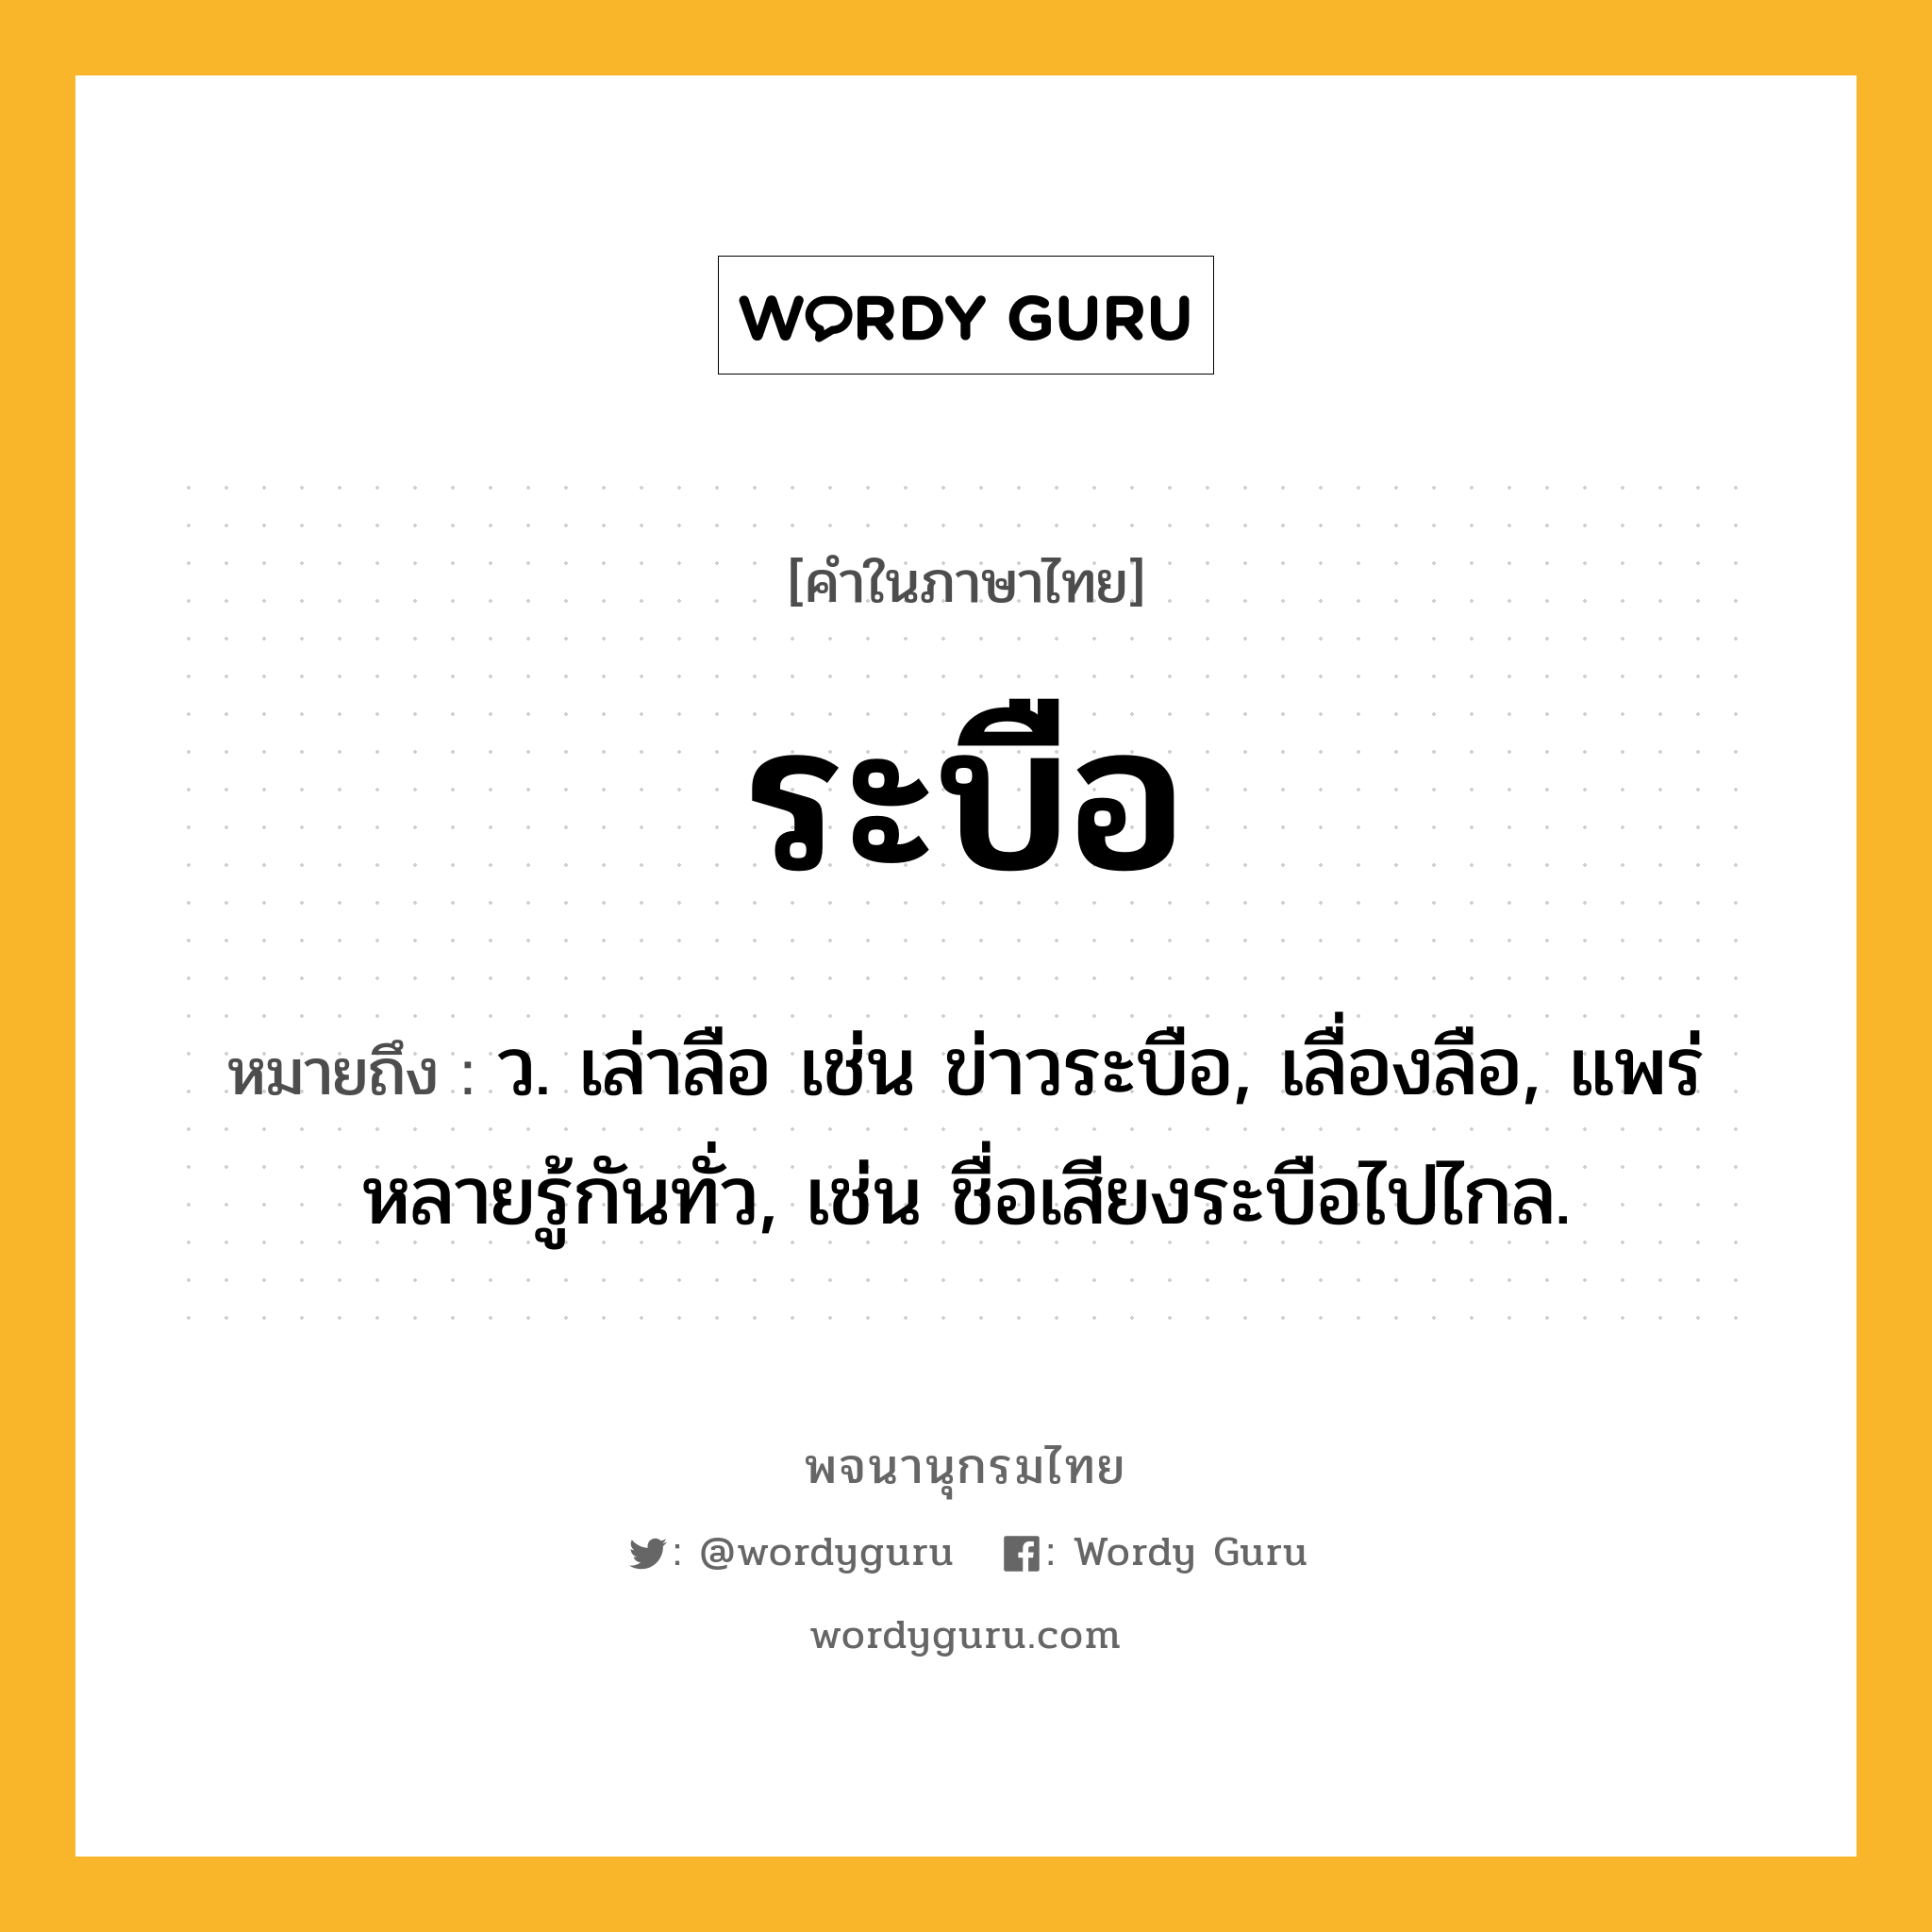 ระบือ ความหมาย หมายถึงอะไร?, คำในภาษาไทย ระบือ หมายถึง ว. เล่าลือ เช่น ข่าวระบือ, เลื่องลือ, แพร่หลายรู้กันทั่ว, เช่น ชื่อเสียงระบือไปไกล.